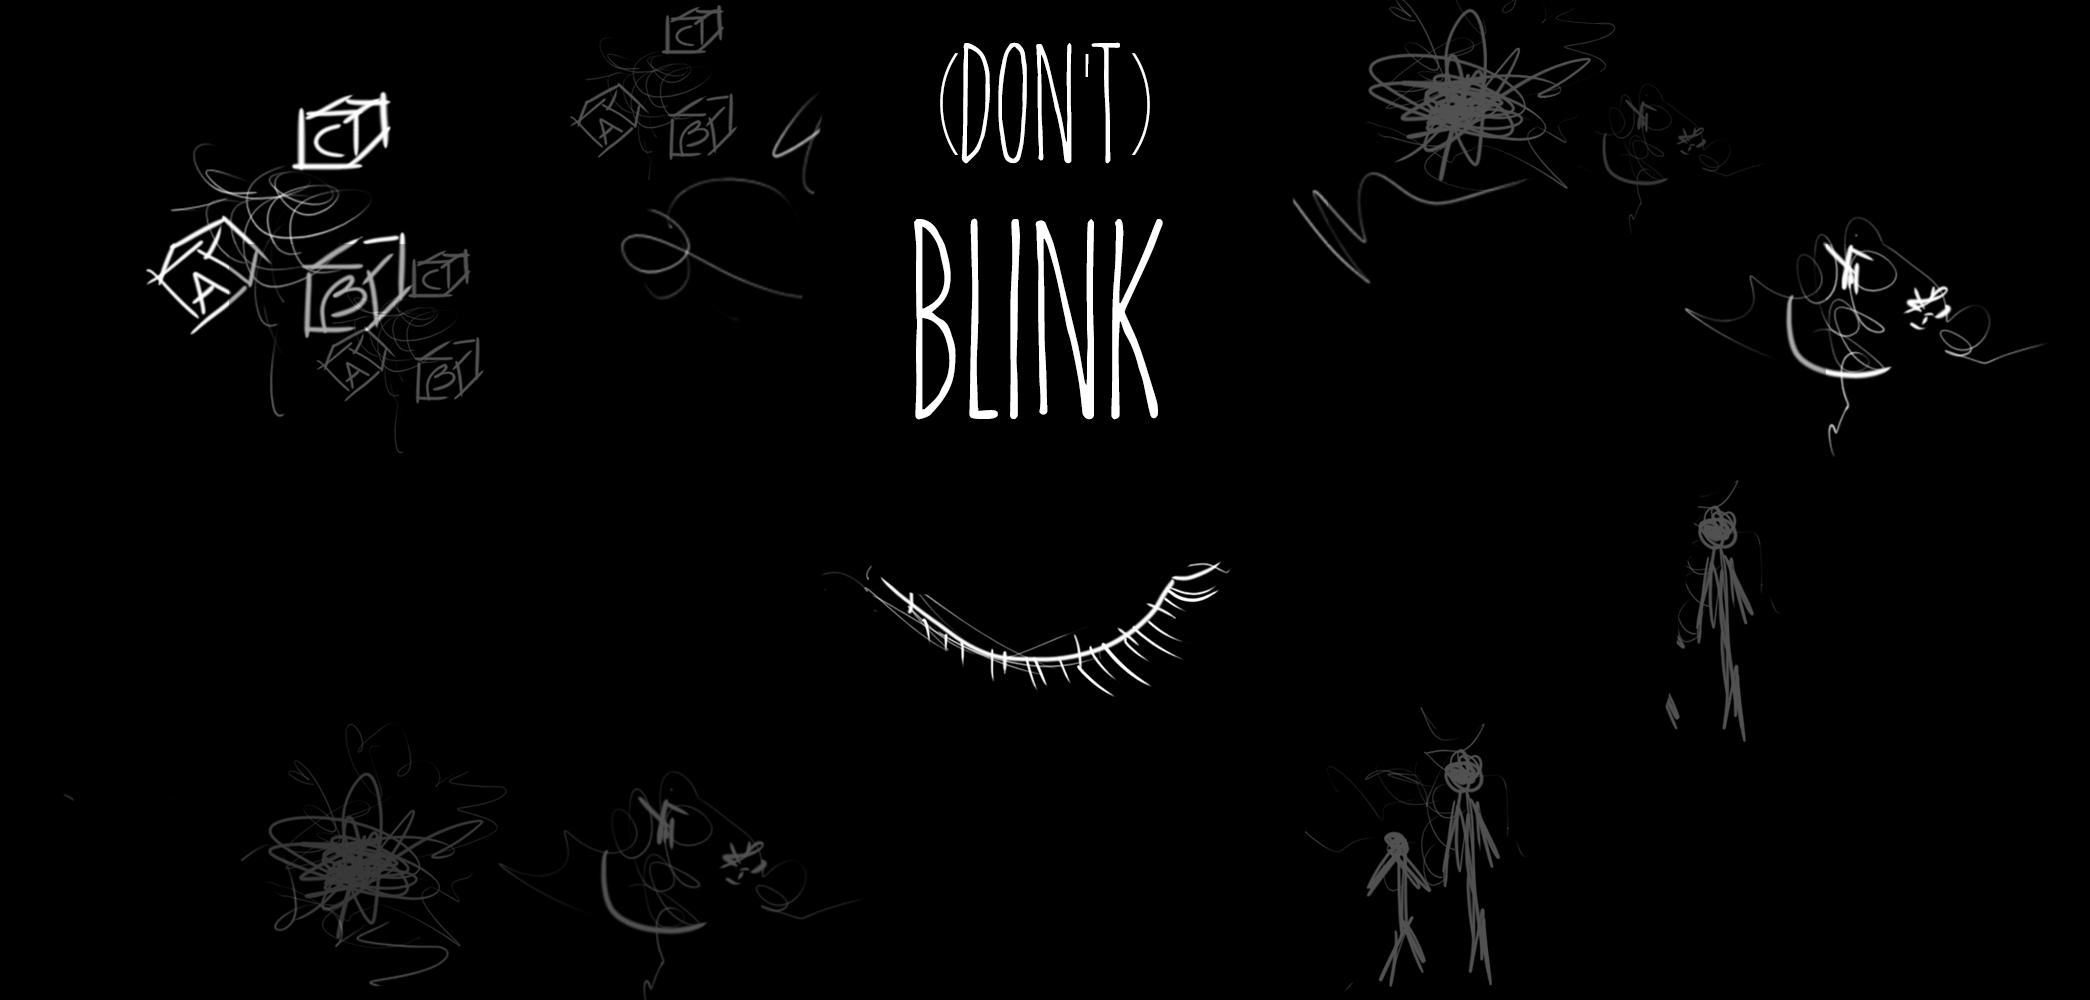 (Don't) Blink